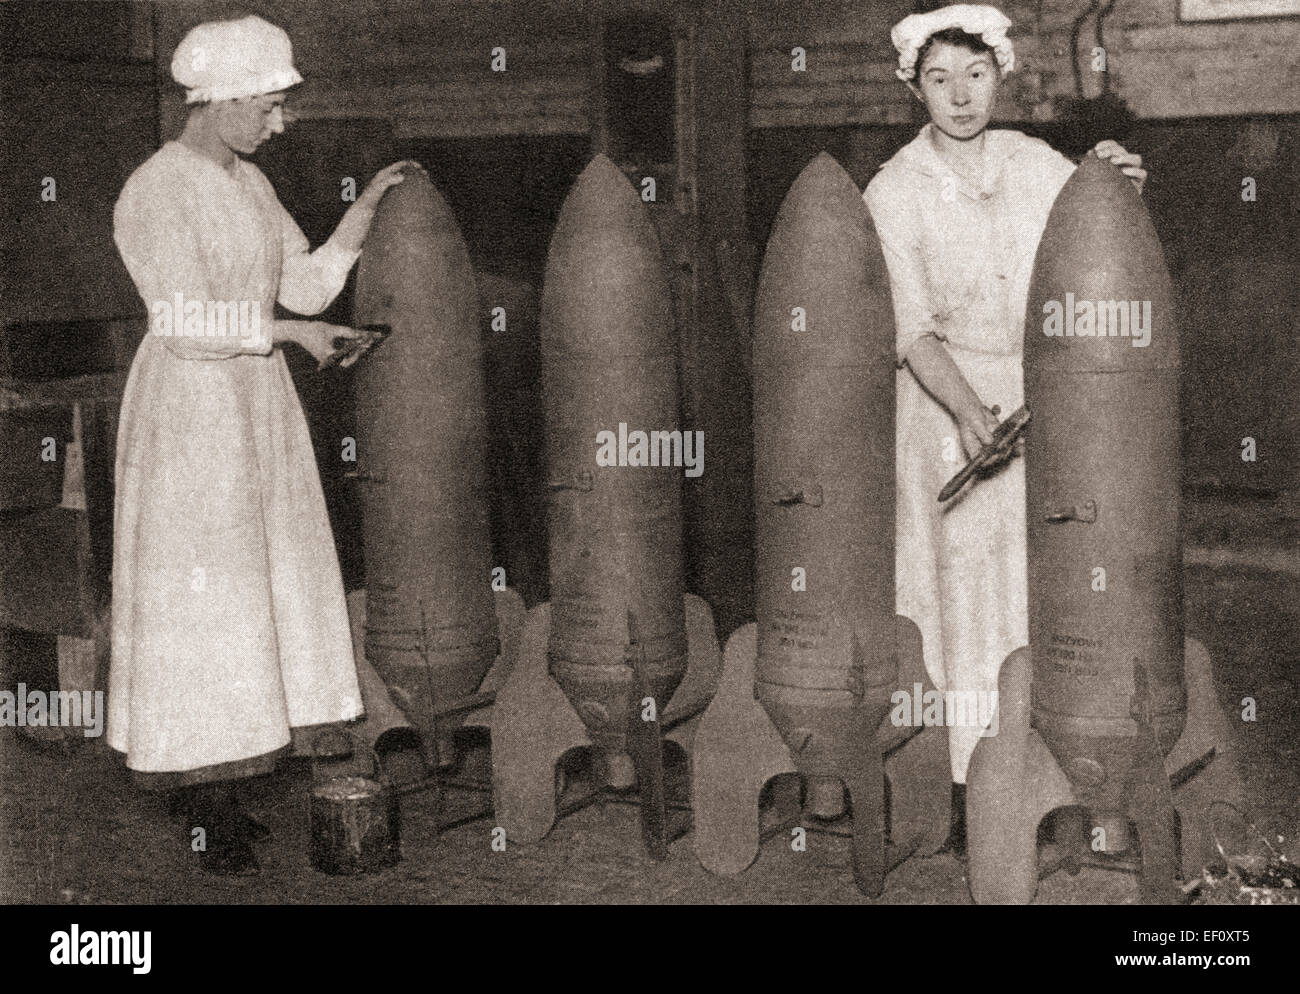 Frauen übernahmen viele Männerberufe während Weltkrieges einer, wodurch die Menschen frei zu kämpfen.  Sehen Sie hier setzen die Frauen einen neuen Anstrich Fliegerbomben. Stockfoto